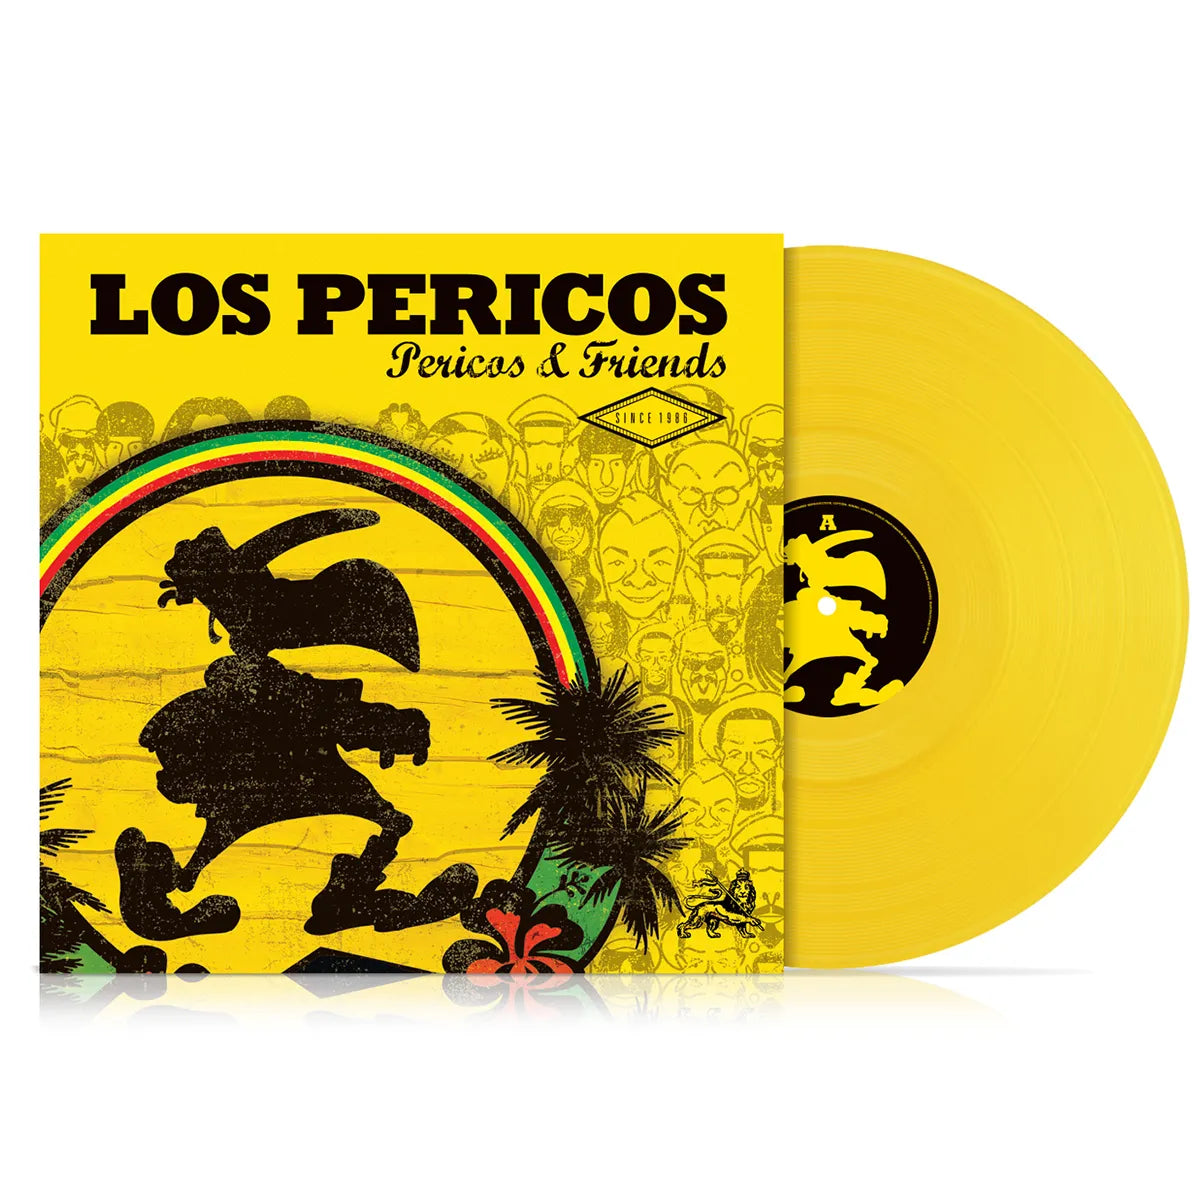 Los Pericos - Pericos & Friends (Vinilo nuevo) color amarillo